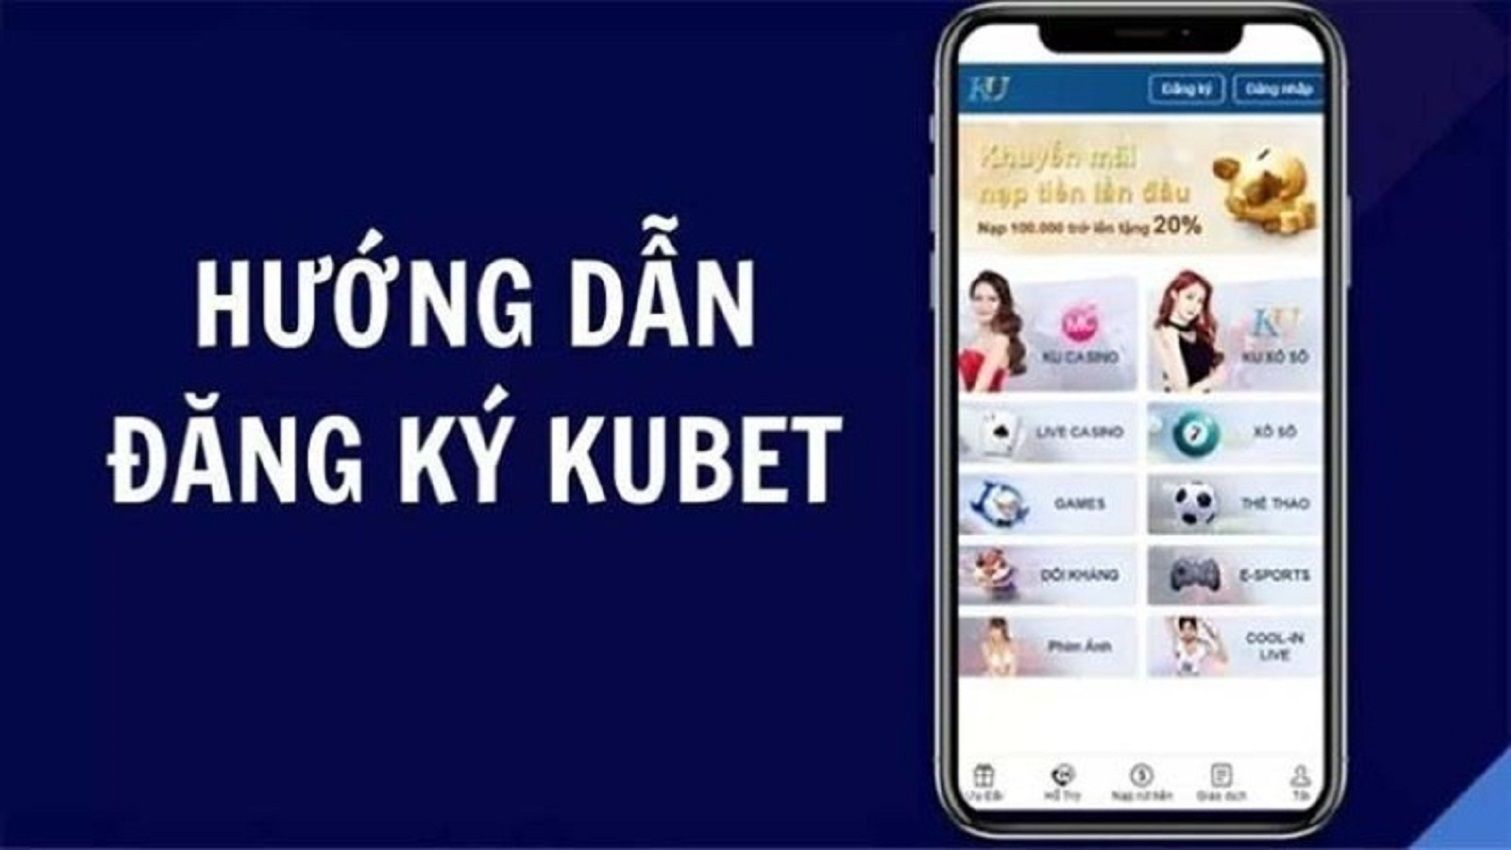 Read more about the article Tải App Kubet trên iOS nhanh chóng và tiện lợi nhất